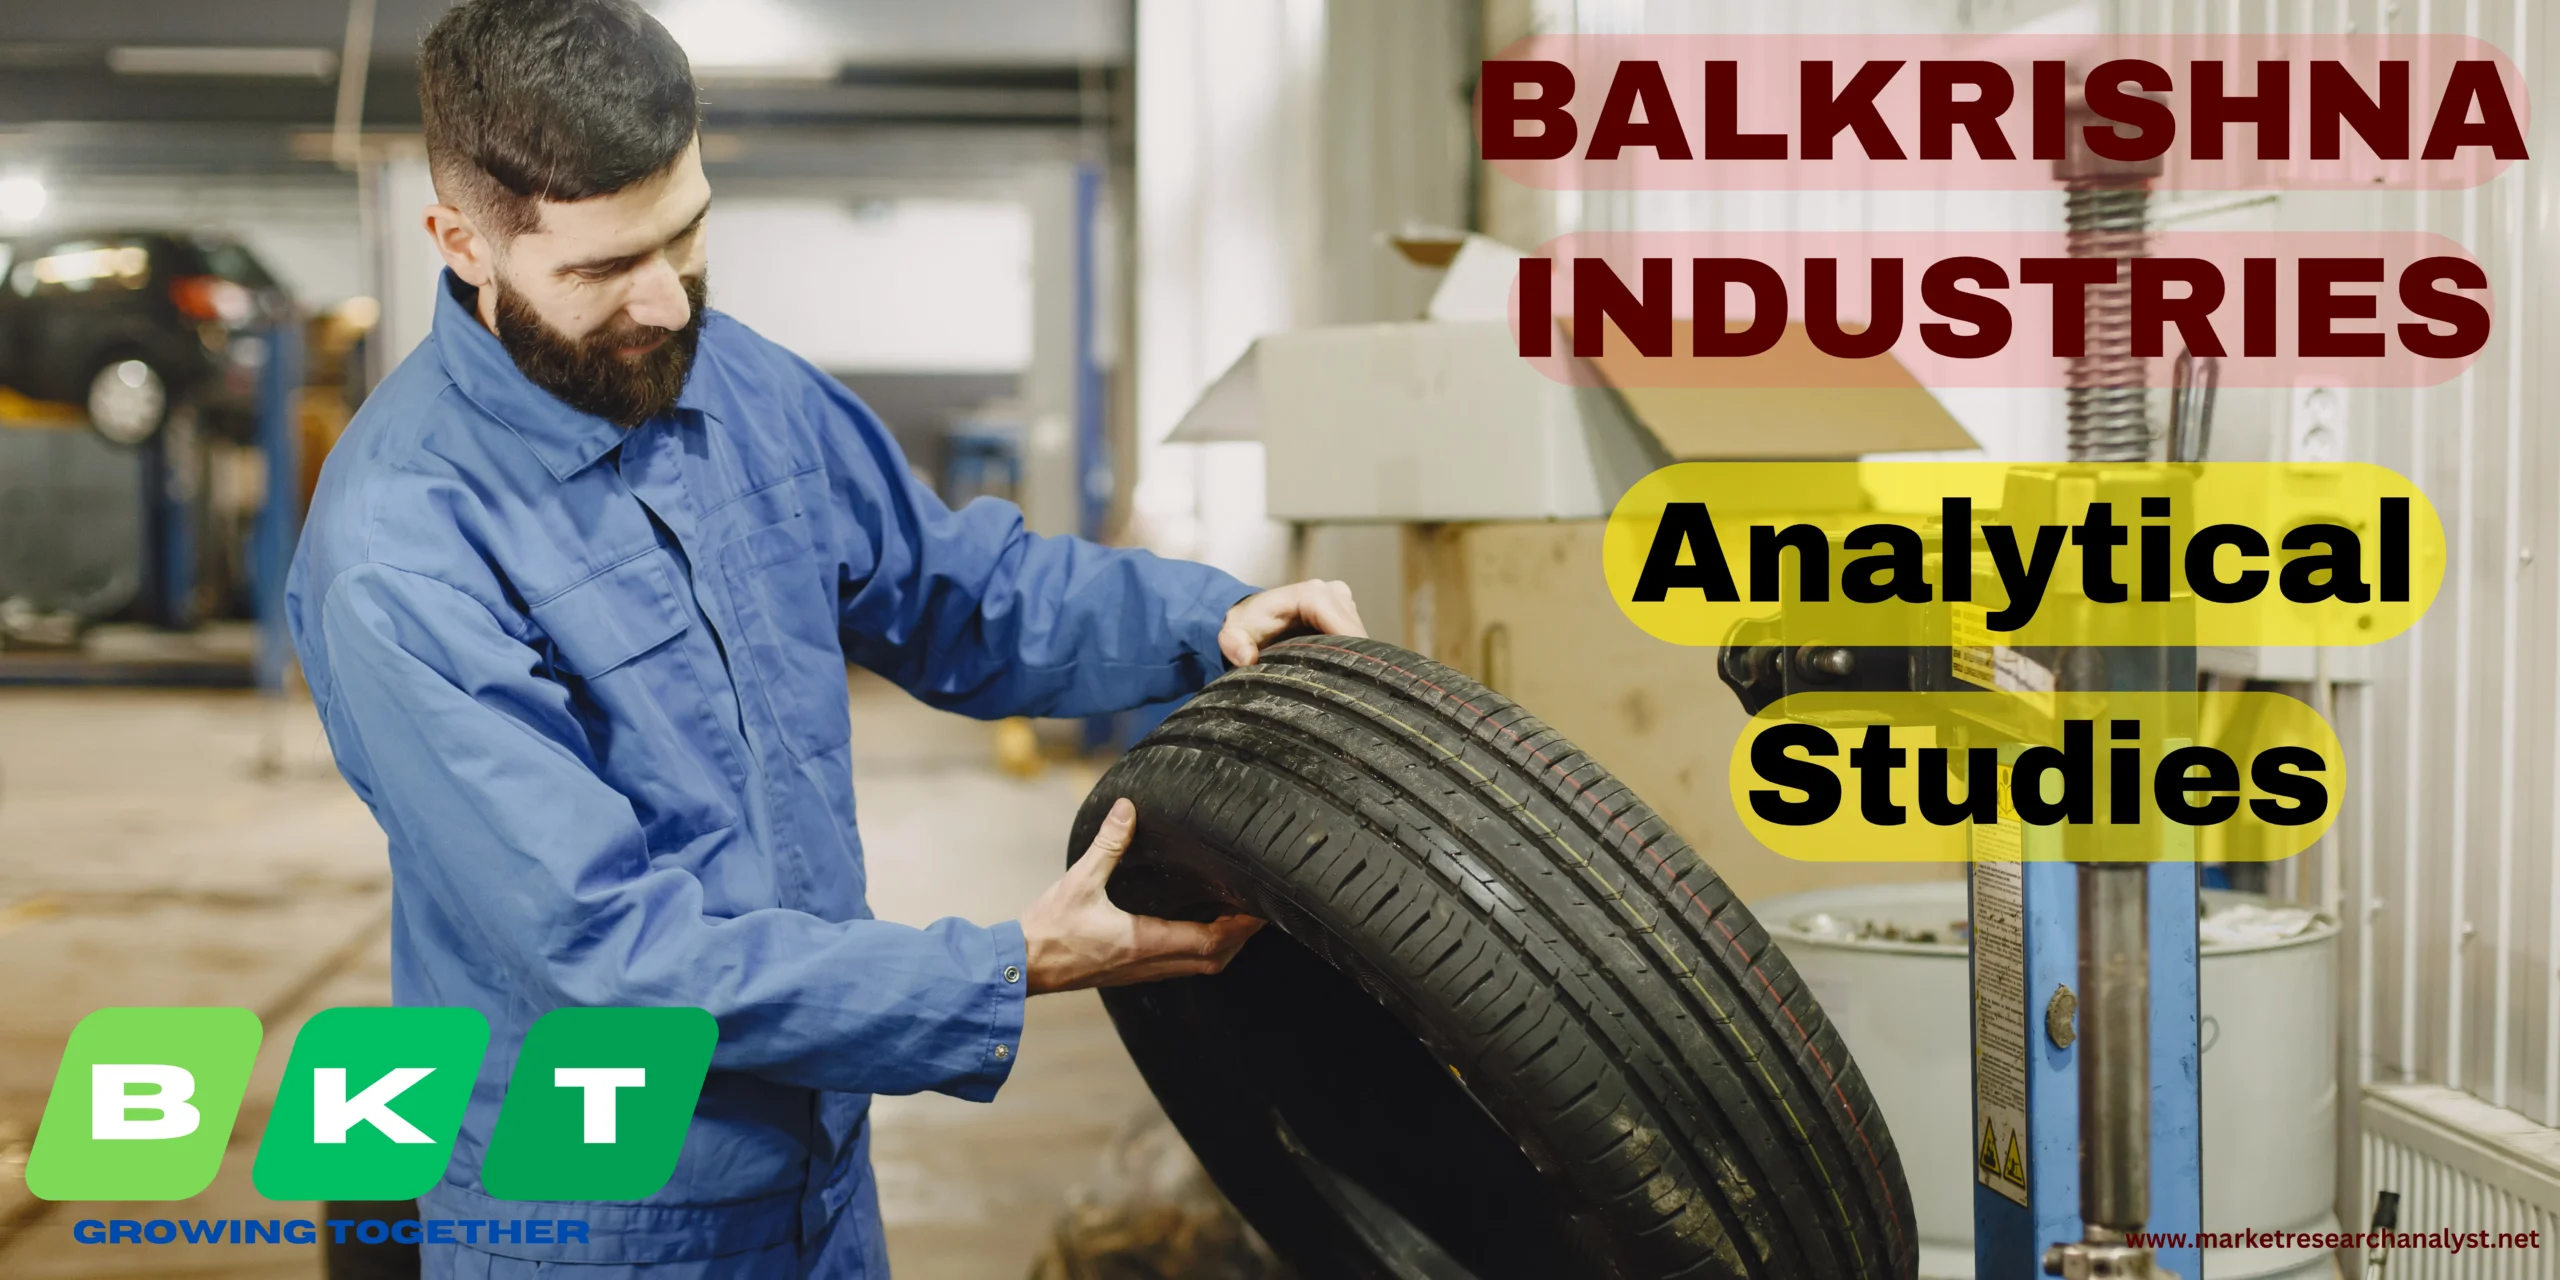 Balkrishna Industries share price Buying